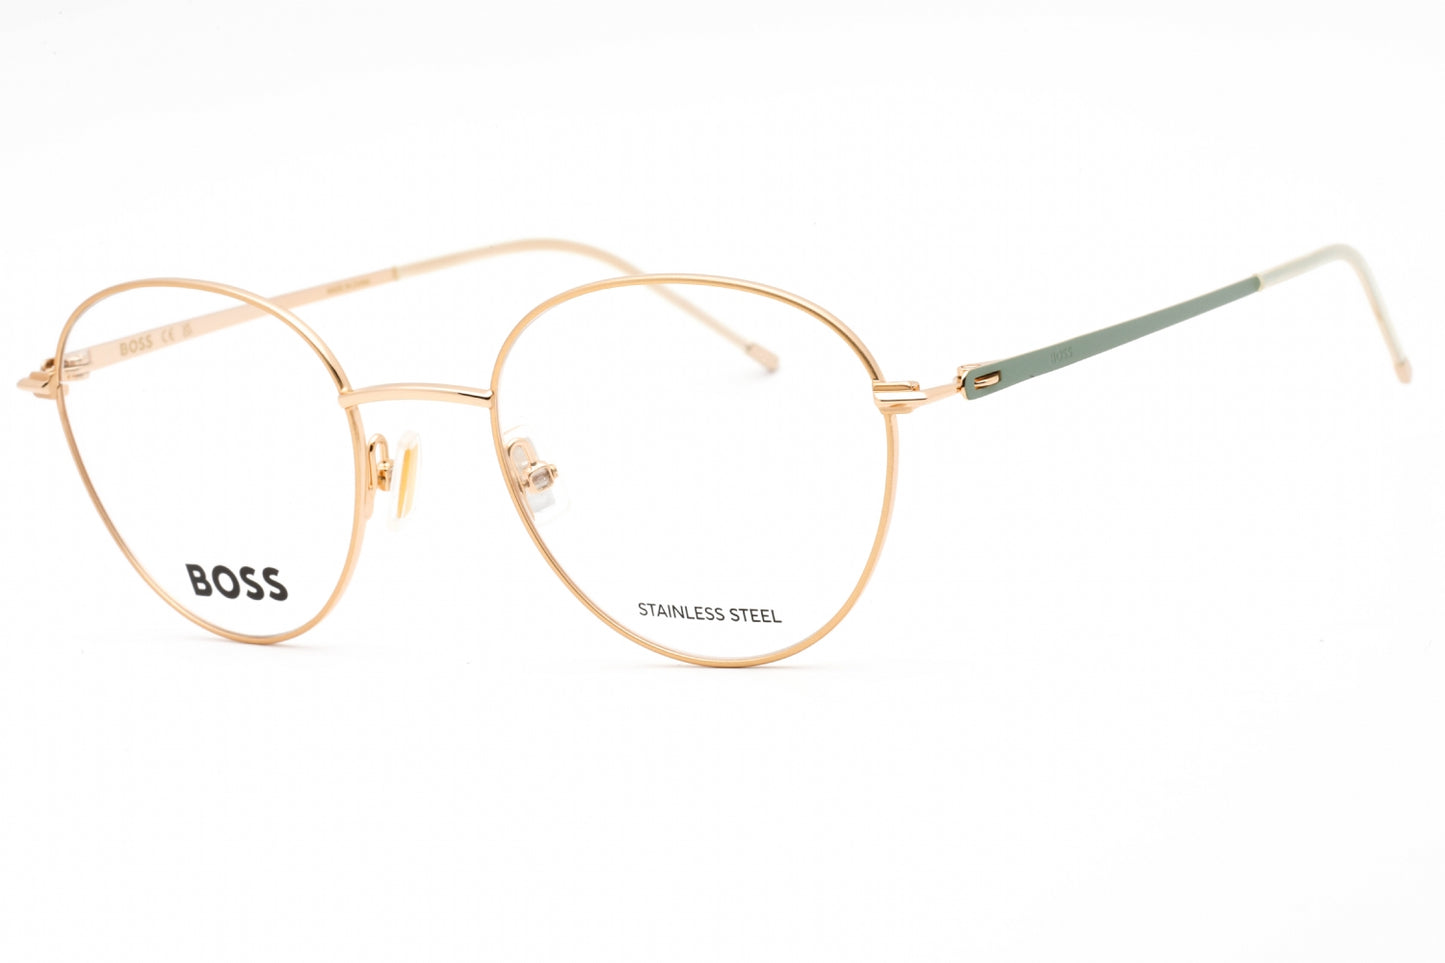 Hugo Boss BOSS 1530-0PEF 00 50mm New Eyeglasses